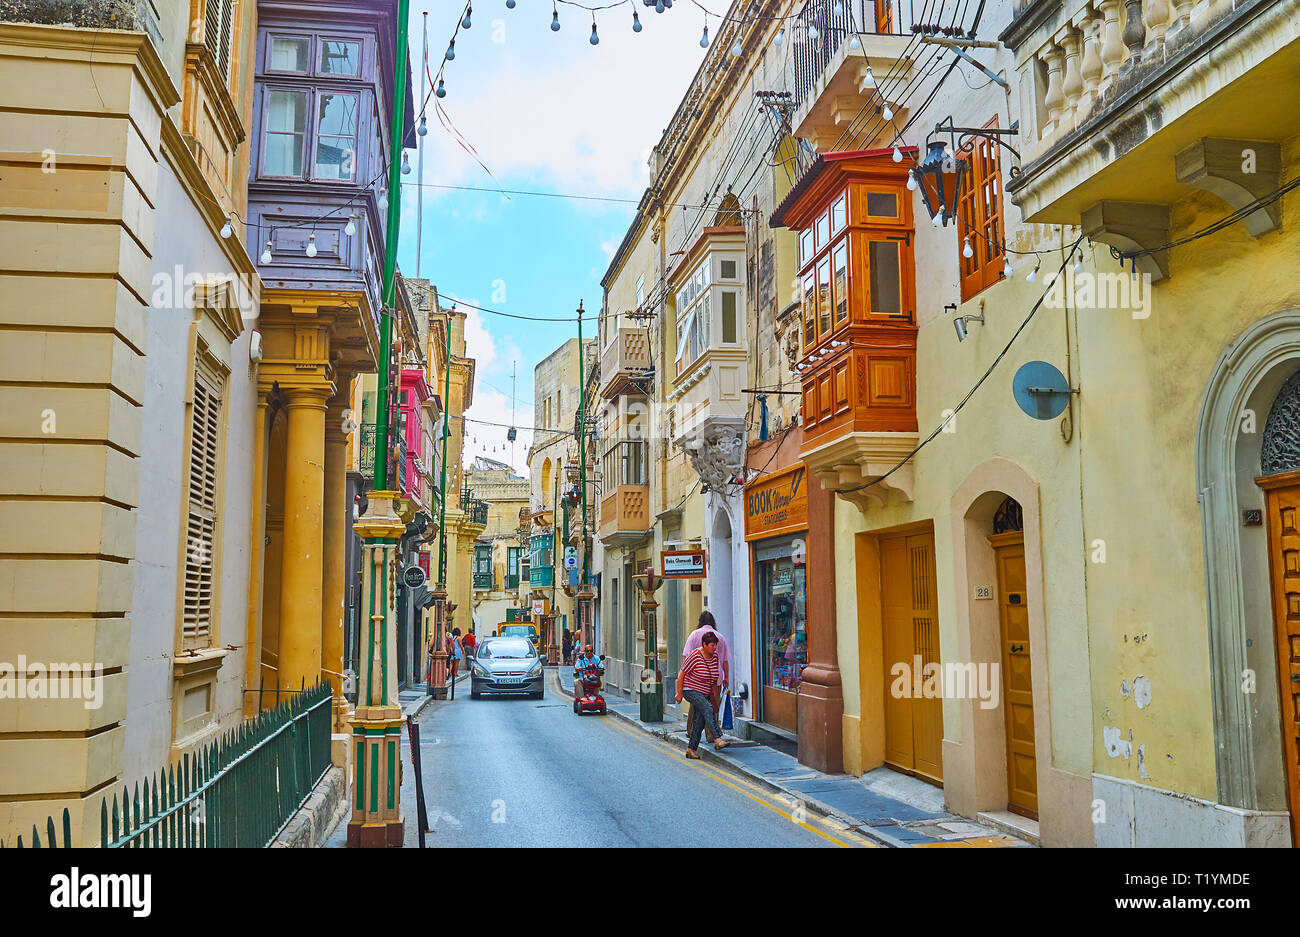 RABAT, Malta - 16 giugno 2018: La scena urbana nella città vecchia con la guida auto, pochi pedoni, piccoli negozi, festa della città decorazioni e lampade, su Foto Stock